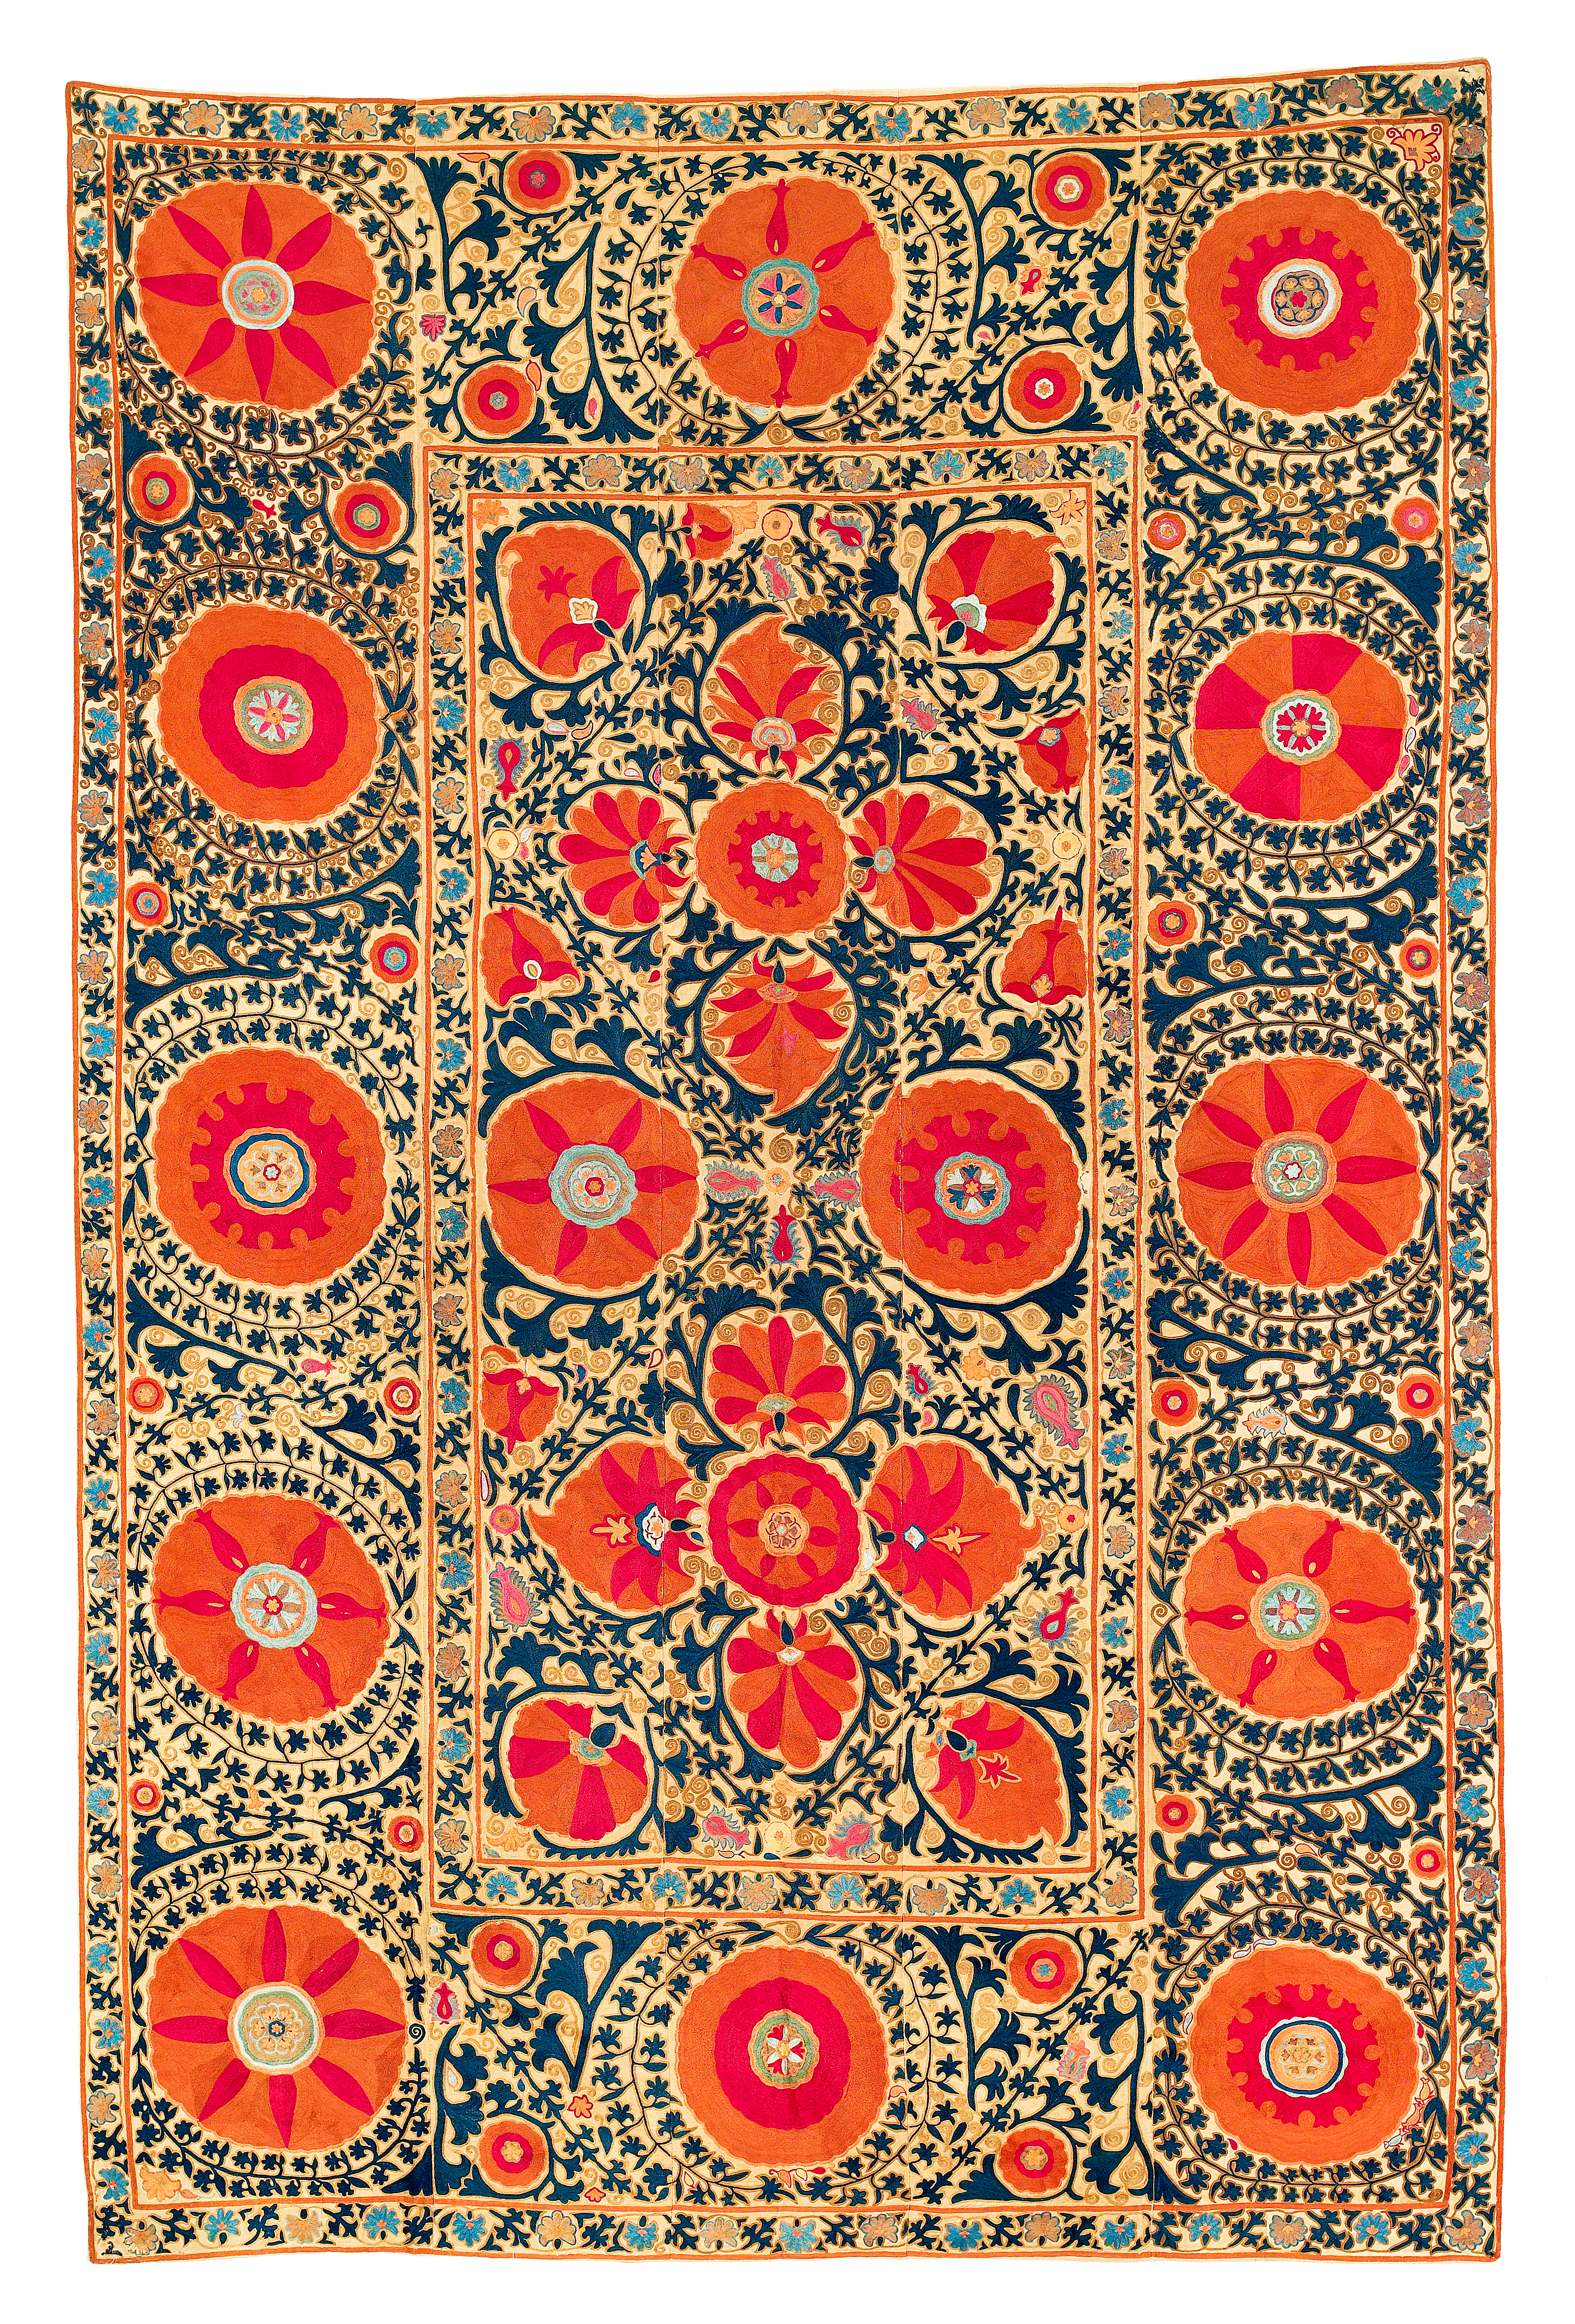 Asian Embroidery Patterns Suzani Textile Wikipedia